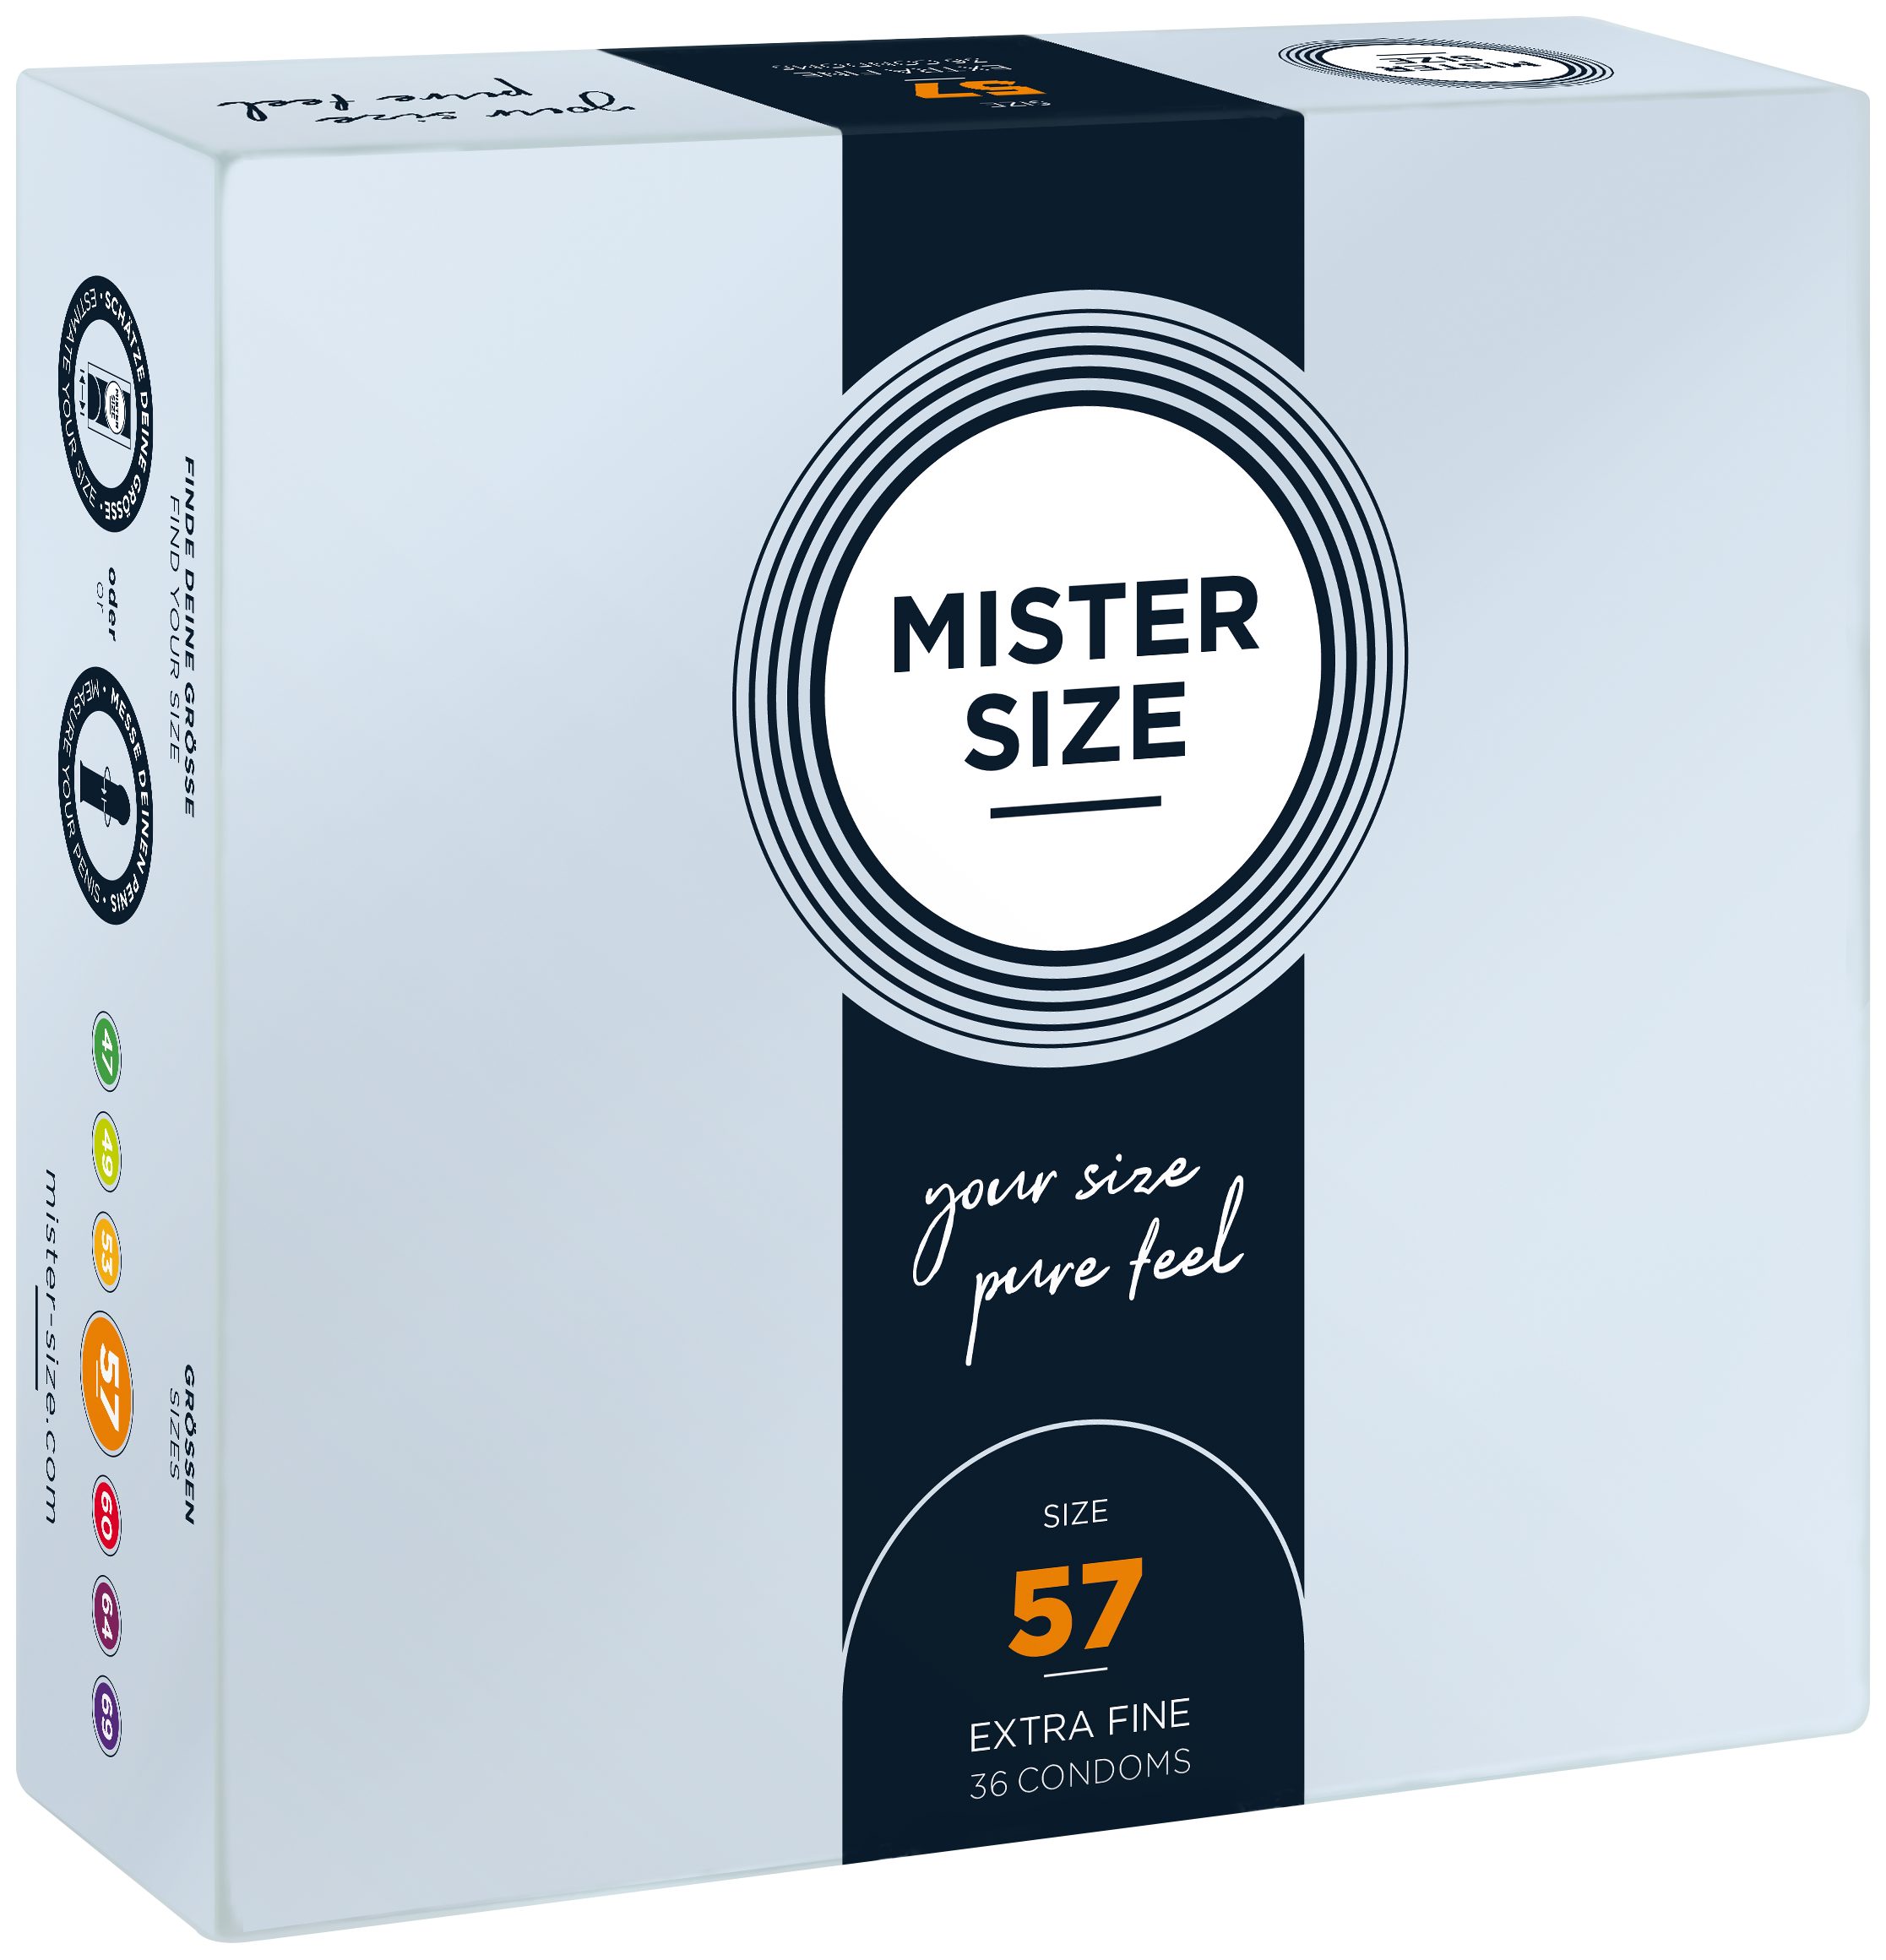 MISTER SIZE Kondome 36 Stück, Nominale Breite 57mm, gefühlsecht & feucht